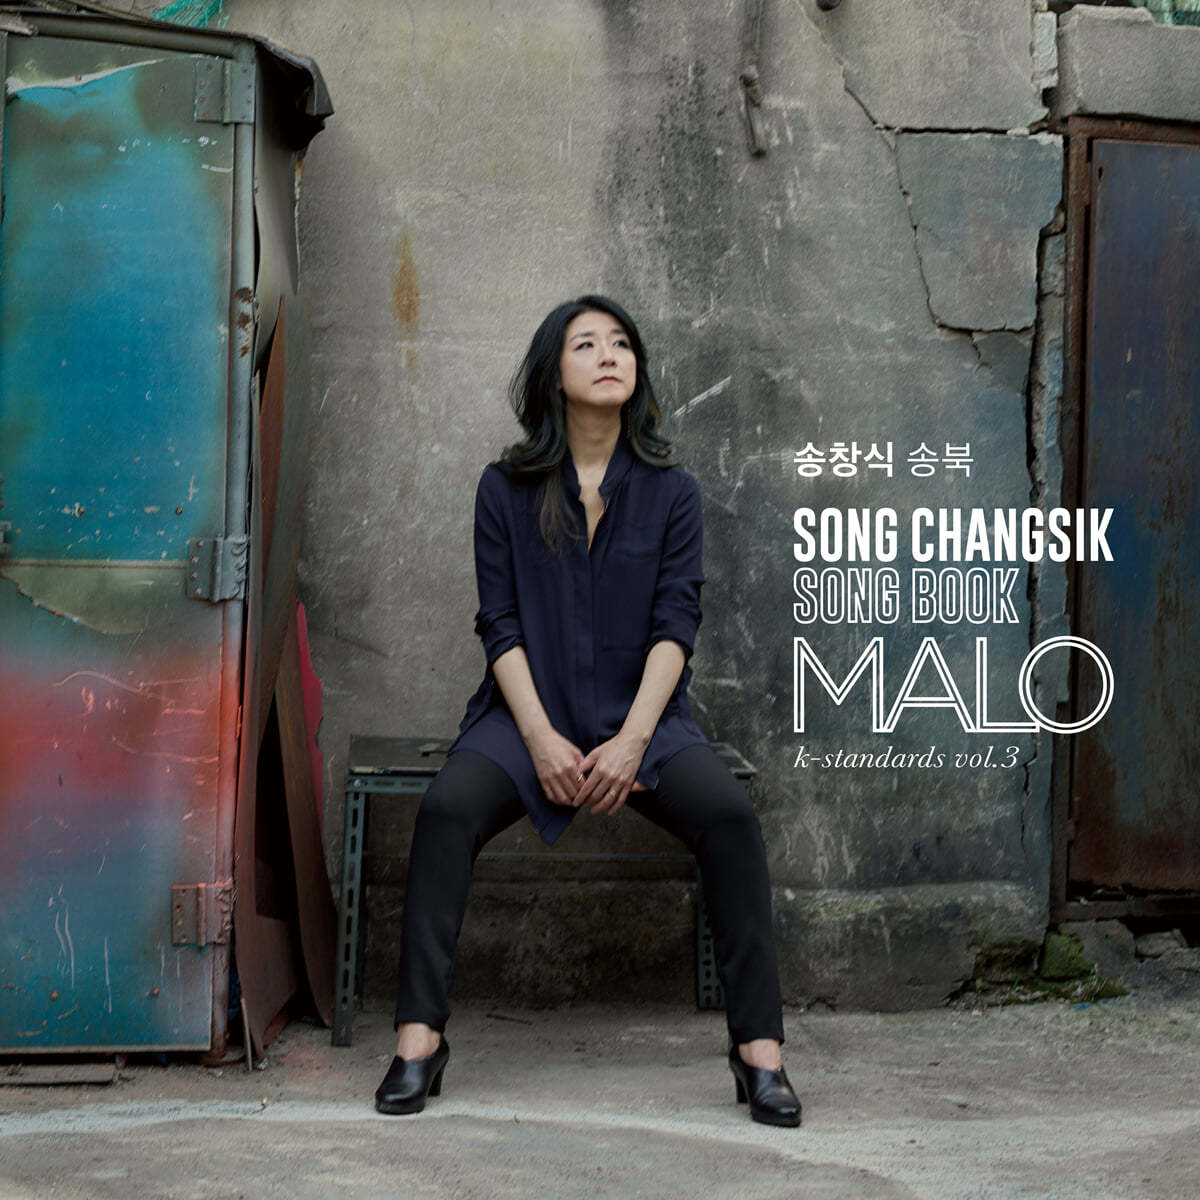 말로 (Malo) - 송창식 송북: Song Changsik Song Book [2LP] 